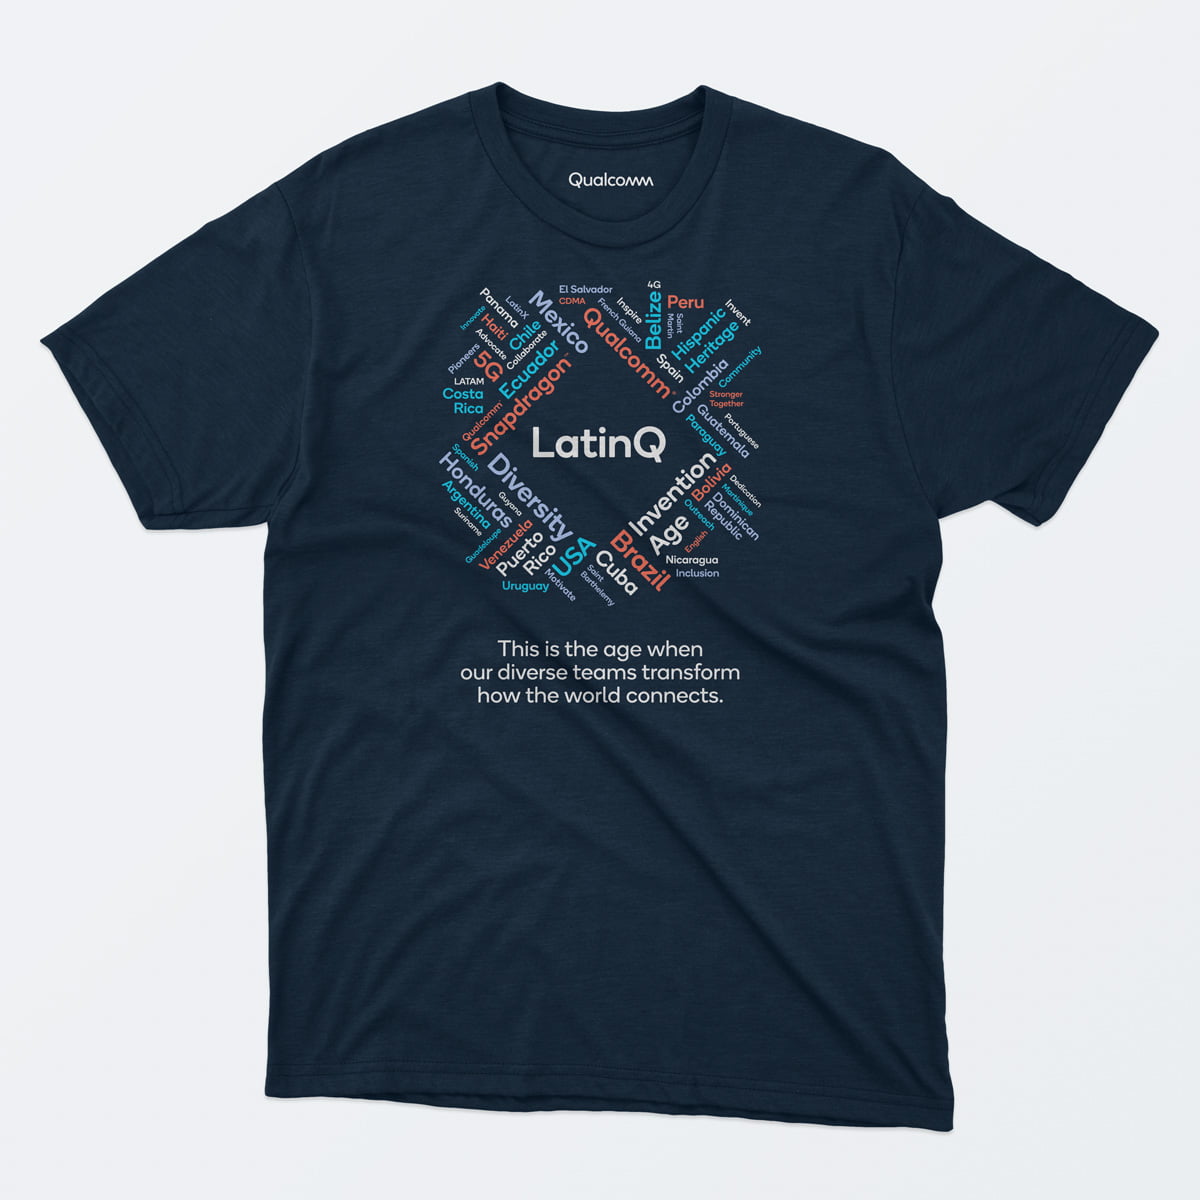 Qualcomm LatinQ t-shirt design